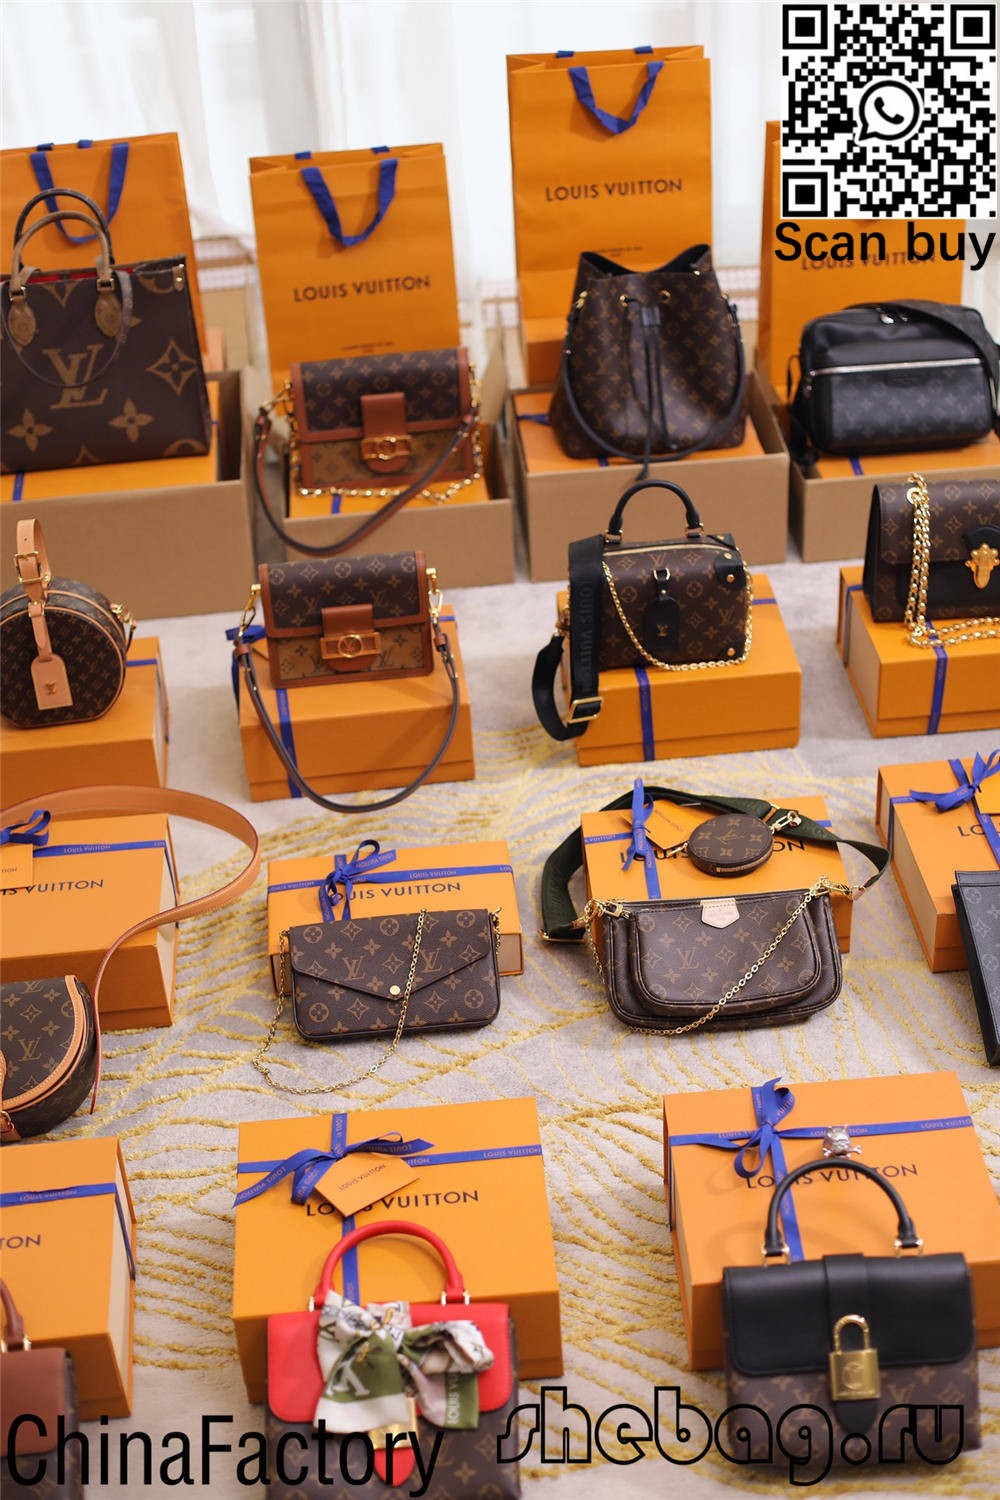 Bolsas Louis Vuitton réplica china por xunto barato (2022 máis recente)-Best Quality Fake Louis Vuitton Bag Online Store, Réplica de bolsa de deseño ru